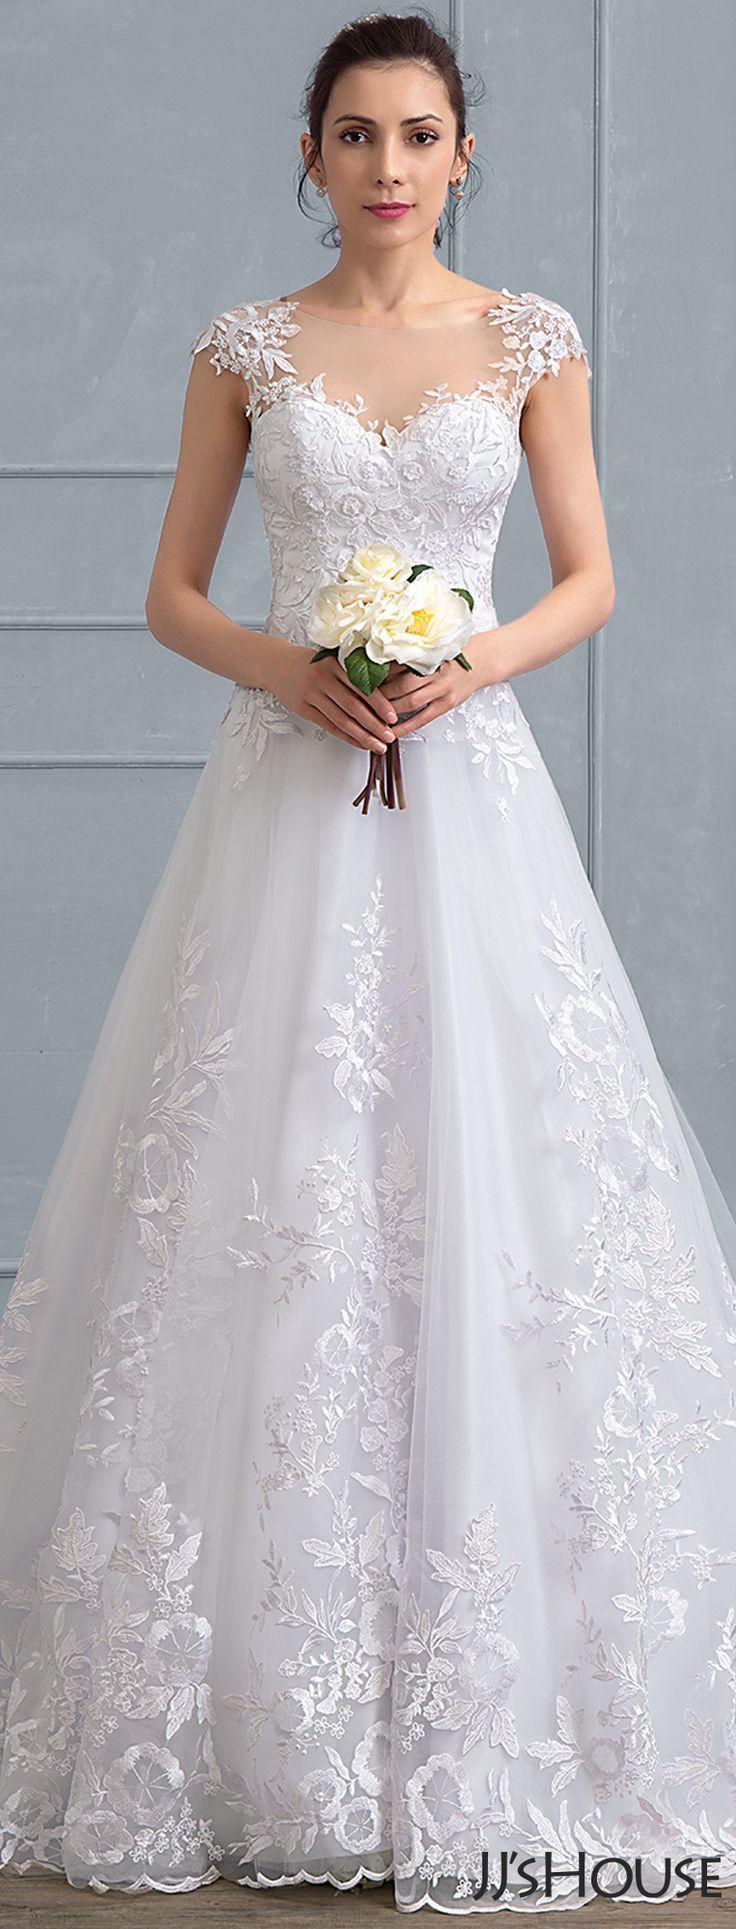 زفاف - A-Line/Princess Scoop Neck Court Train Tulle Lace Wedding Dress (002111937)